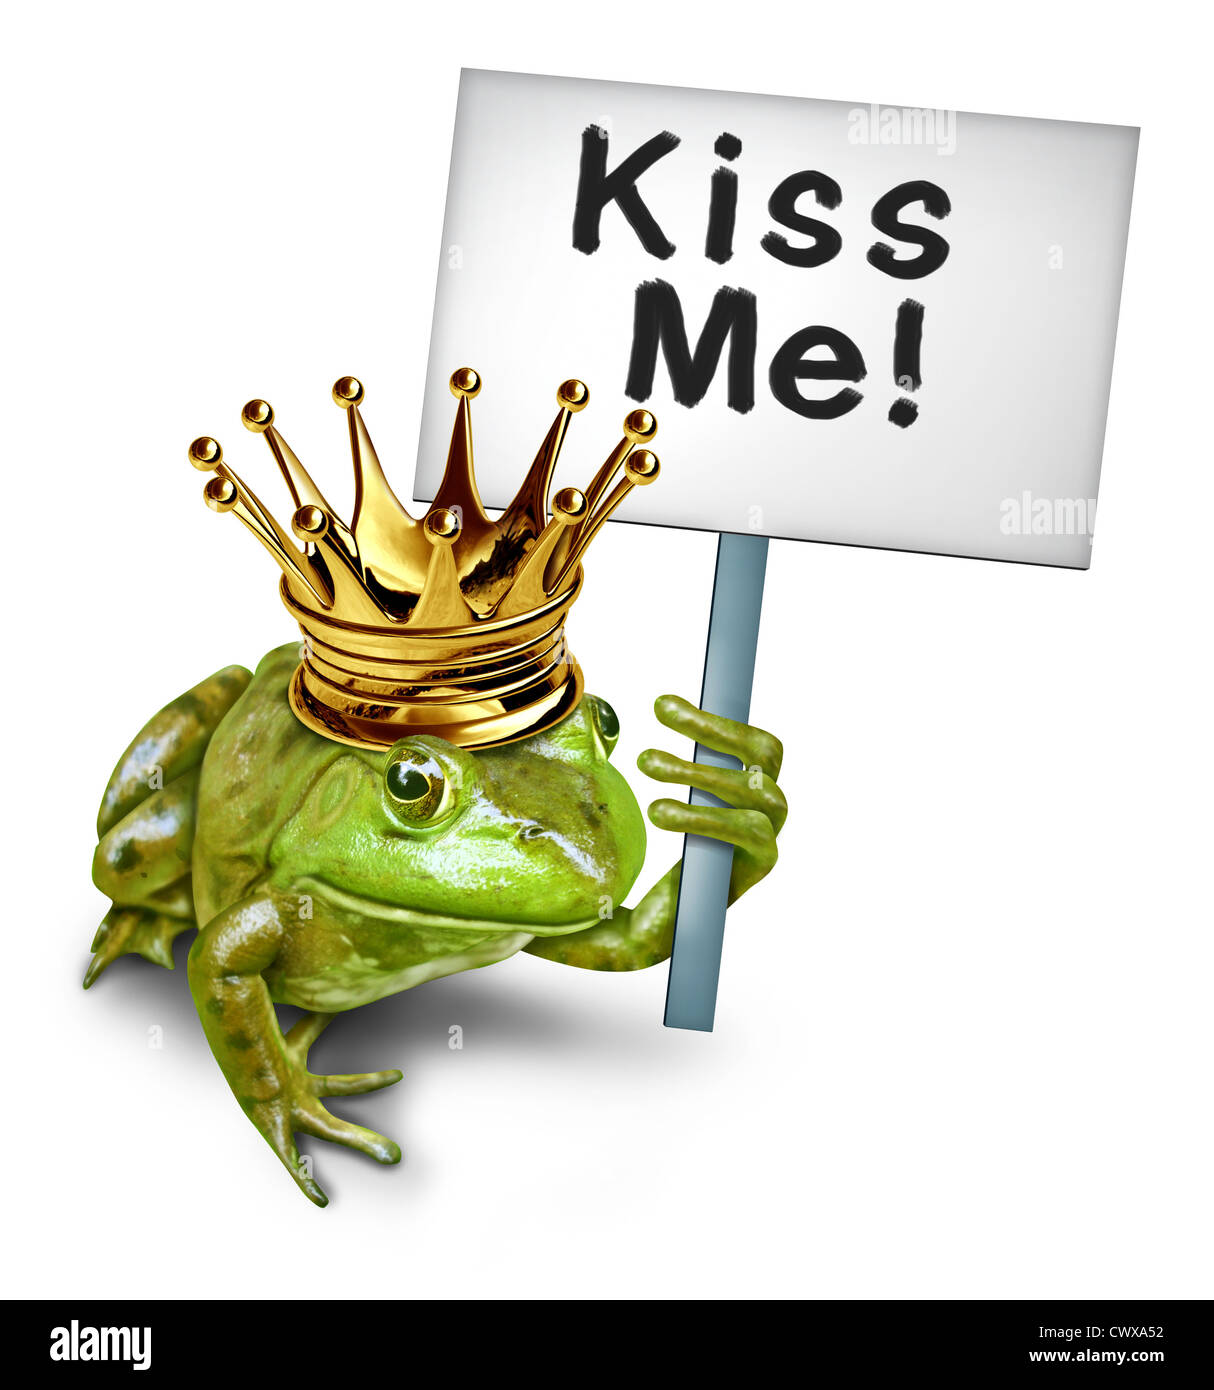 Auf der Suche nach Liebe durch eine grüne glücklich lächelnde Amphibien Froschkönig mit einer goldenen Krone hält einen Schild sagt Kuss mich als Symbol der romantischen dating und Beziehungen für Singles und einsamen Liebhaber sucht einen Partner oder Lebenspartner. Stockfoto